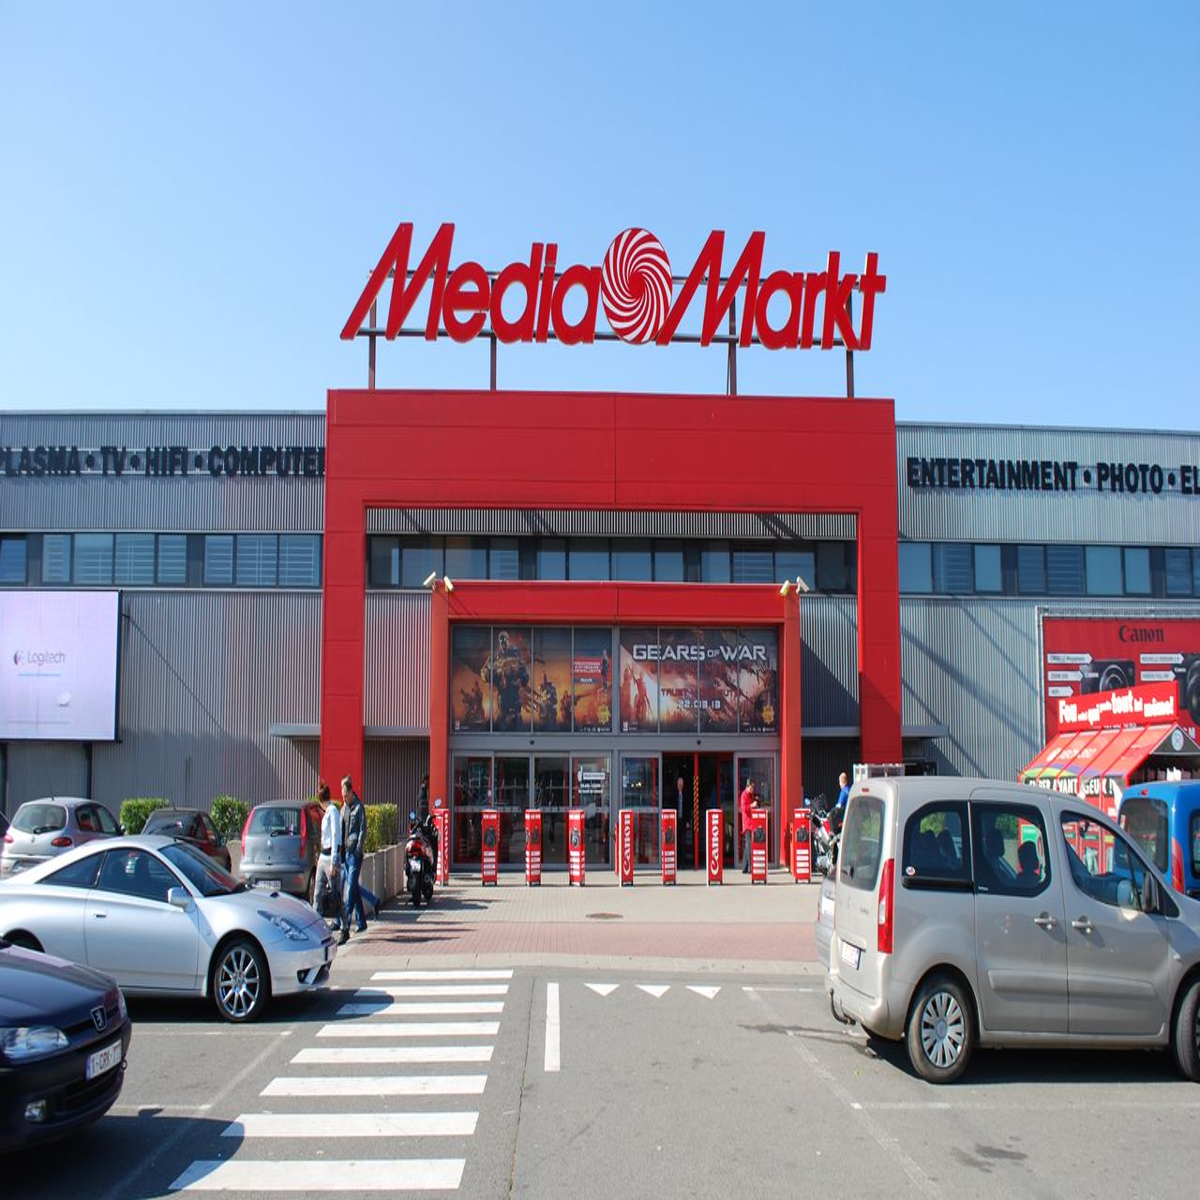 Fnac anuncia conclusão da compra da MediaMarkt Portugal - Negócios - SAPO  Tek